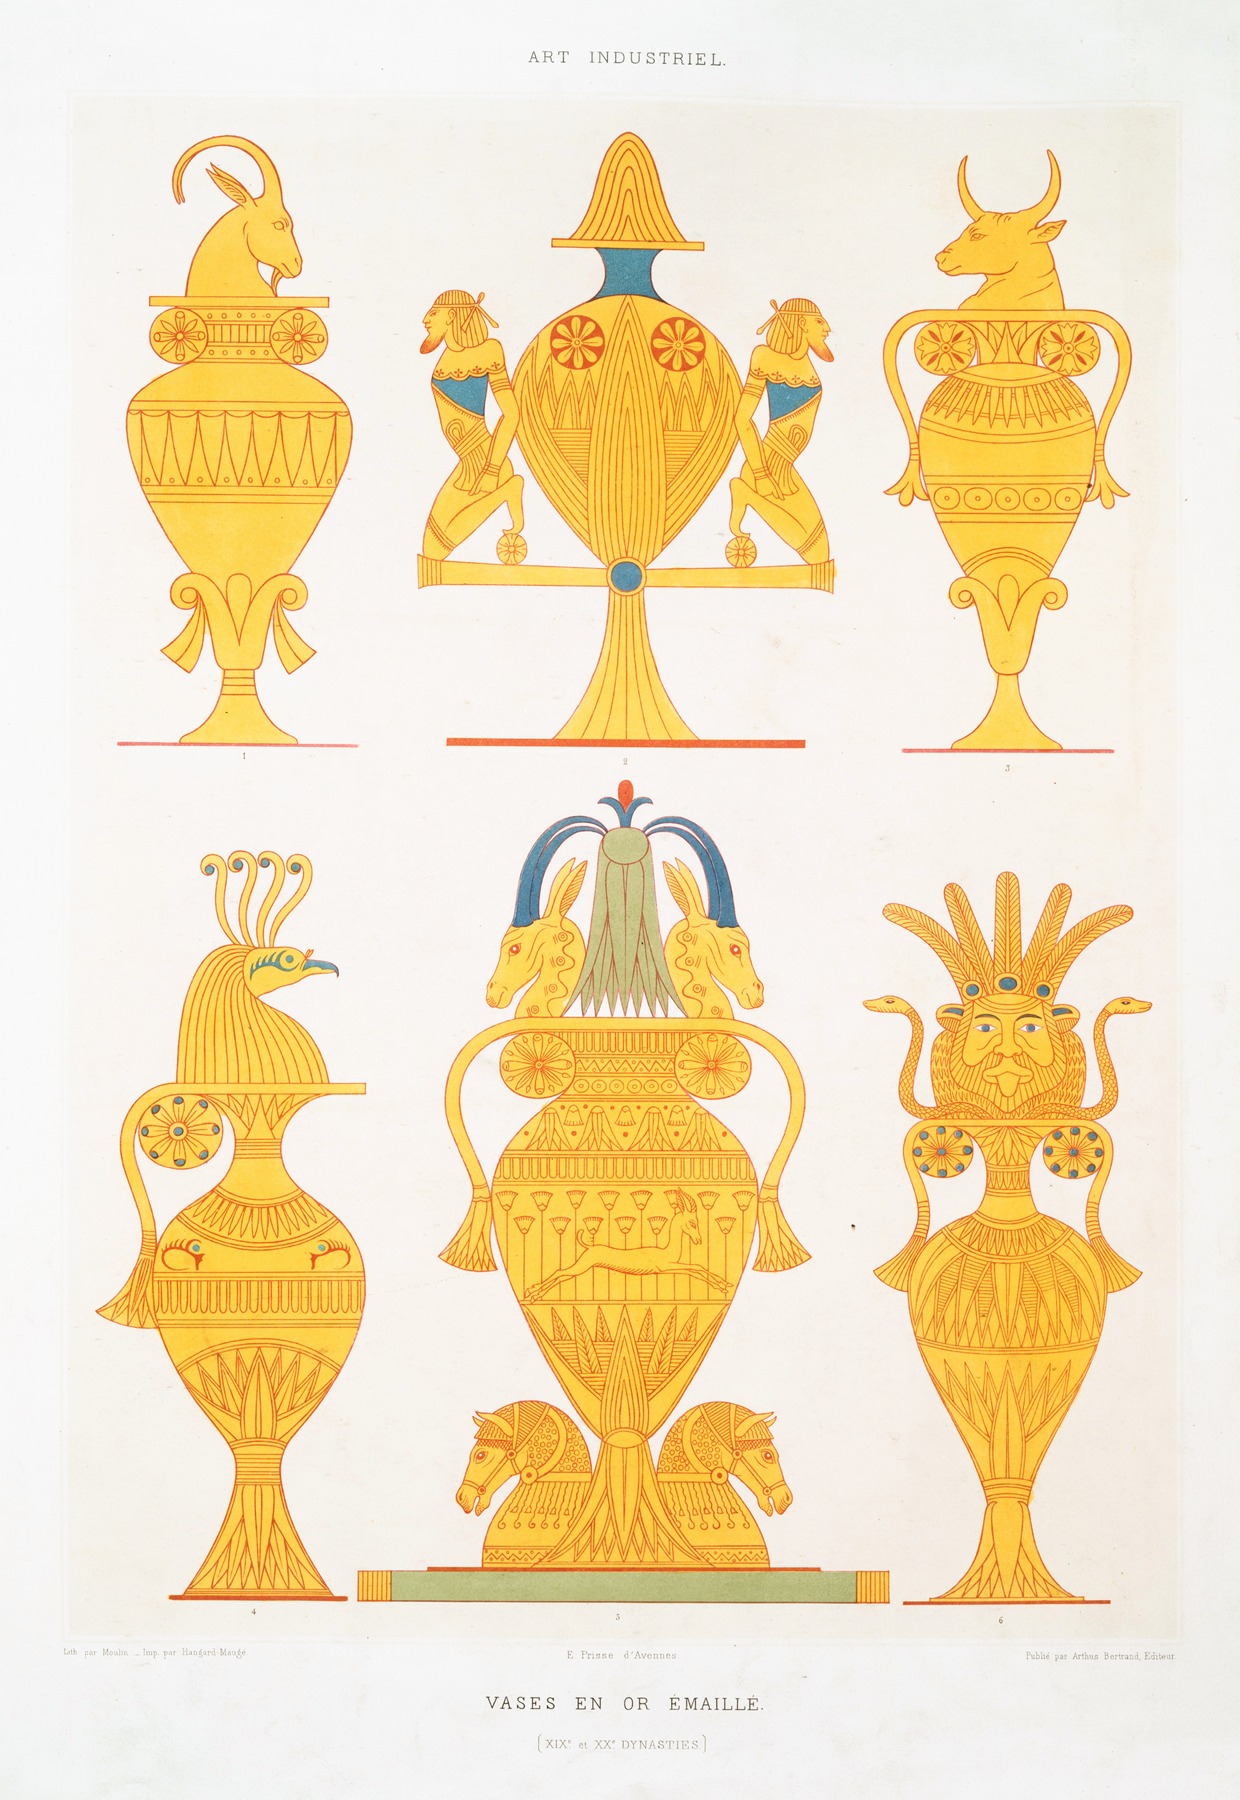 Émile Prisse d'Avennes - Art industriel; vases en or émaillé (XIXe. et XXe. dynasties)